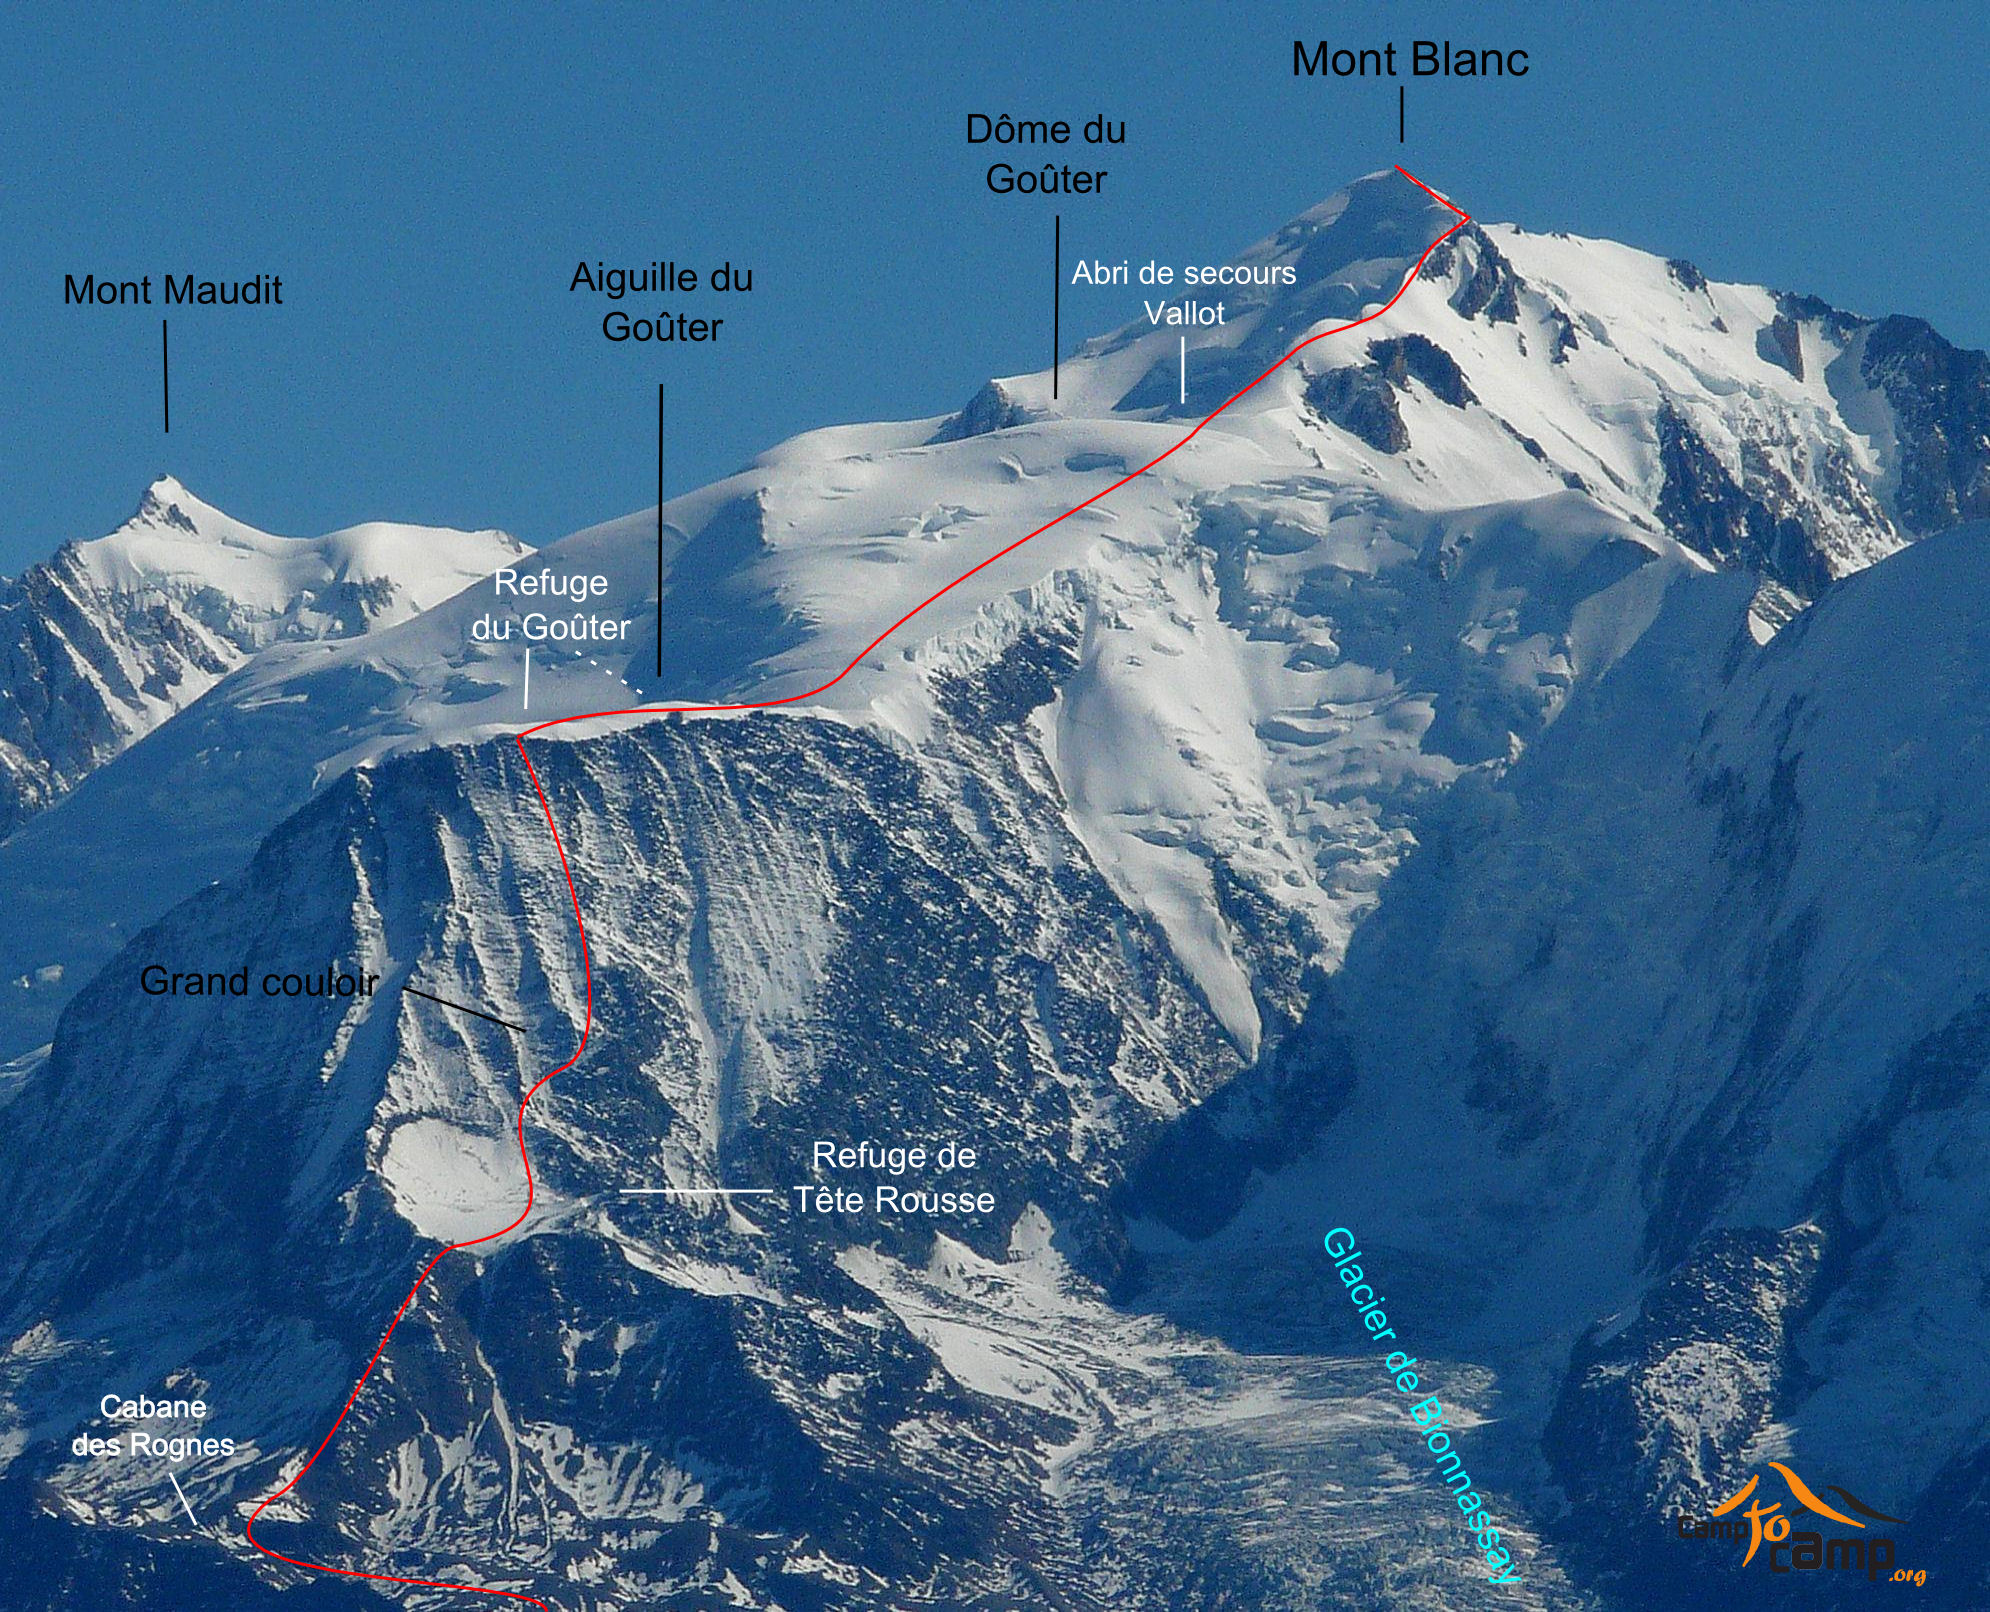 Mont Blanc - Goûter route.jpg